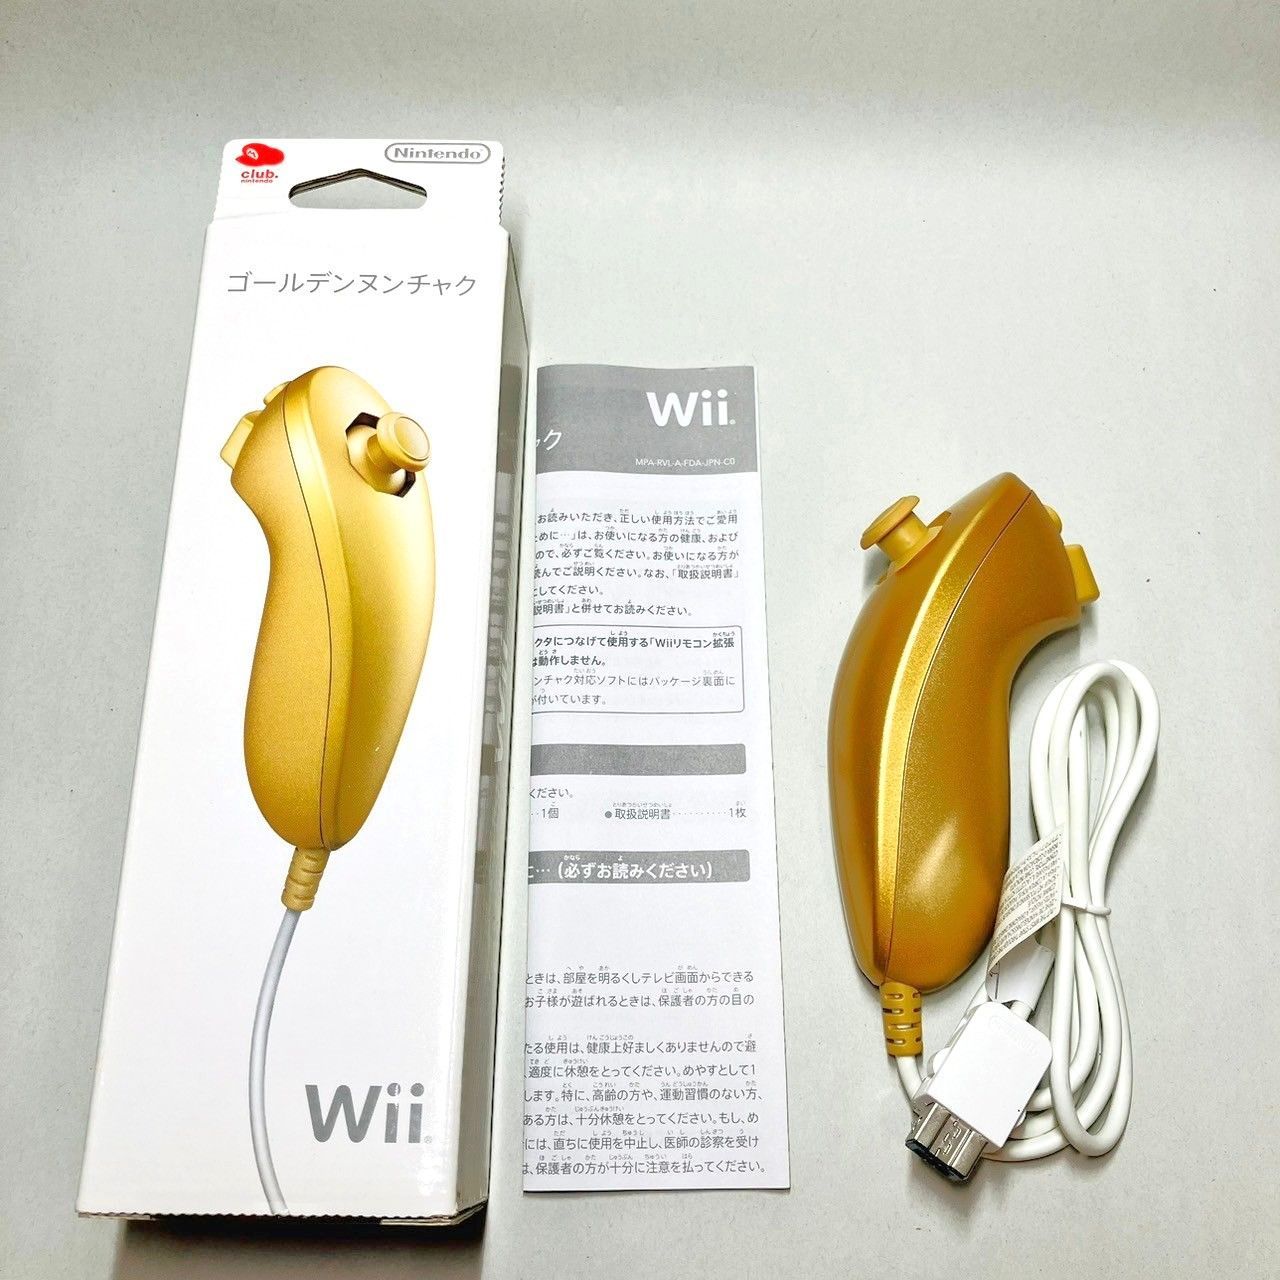 ◇【極美品】 Nintendo Wii ゴールデンヌンチャク ヌンチャク ゴールド 